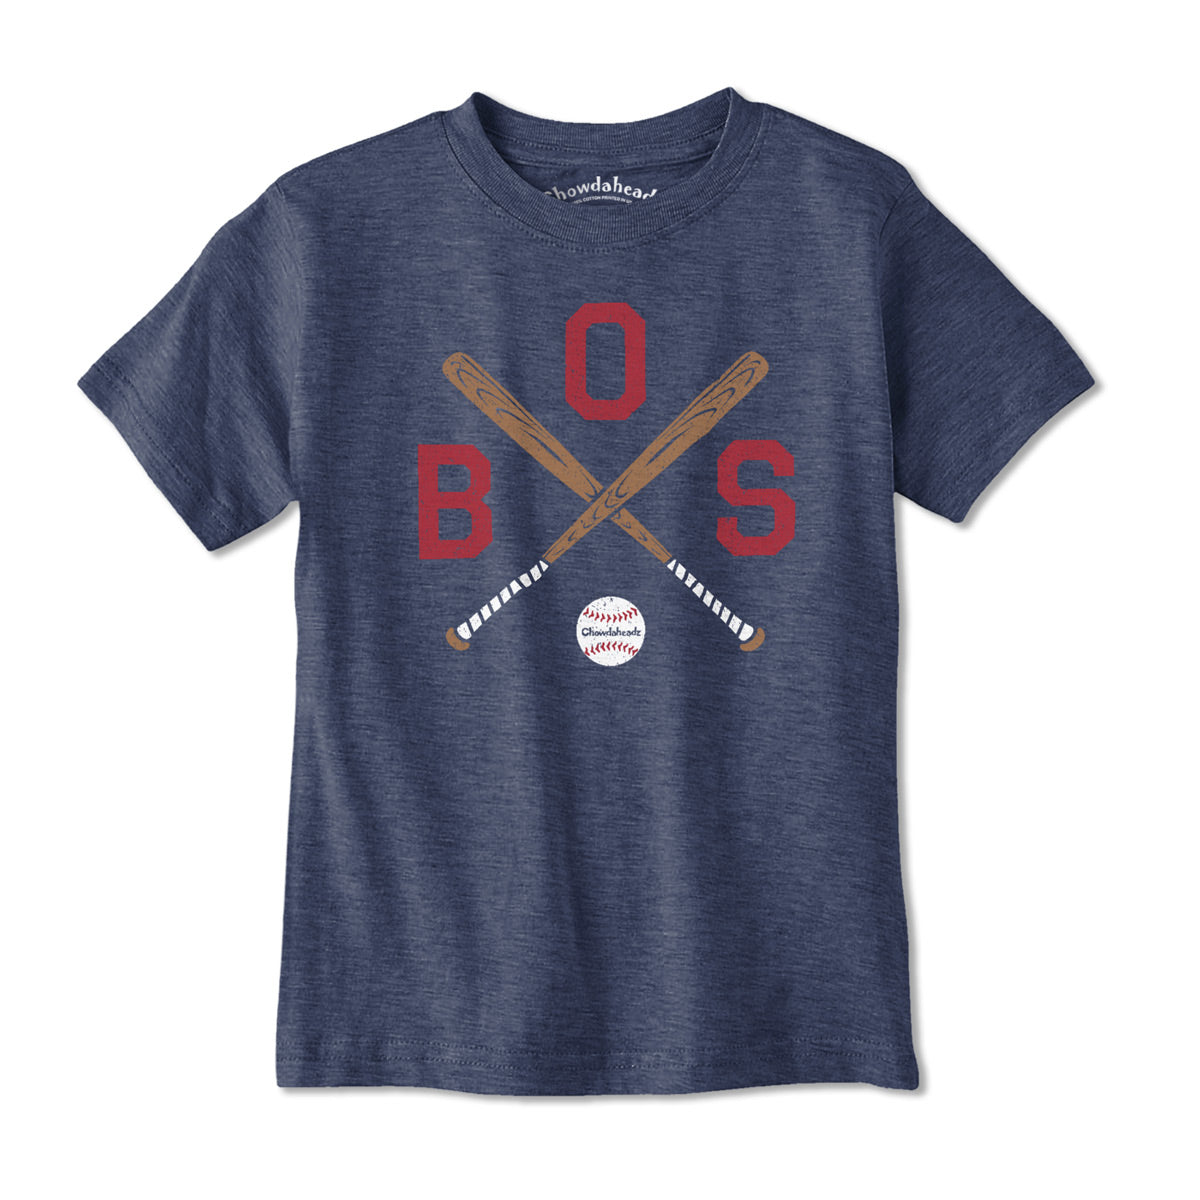 BOS Cross Bats Youth T-Shirt - Chowdaheadz